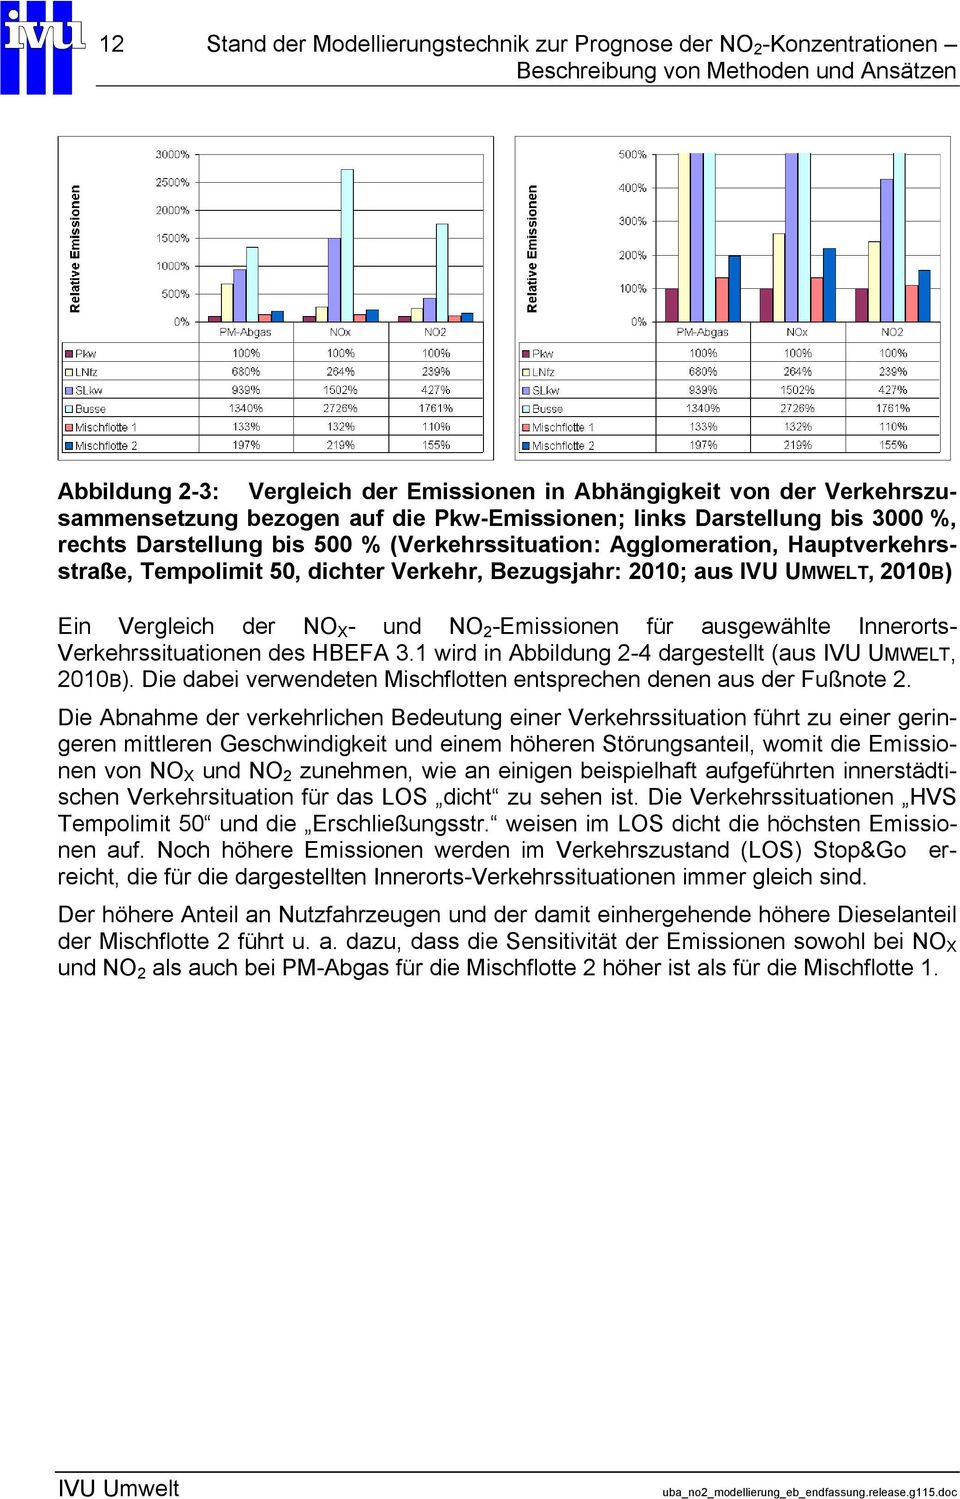 aus IVU UMWELT, 2010B) Ein Vergleich der NO X - und NO 2 -Emissionen für ausgewählte Innerorts- Verkehrssituationen des HBEFA 3.1 wird in Abbildung 2-4 dargestellt (aus IVU UMWELT, 2010B).